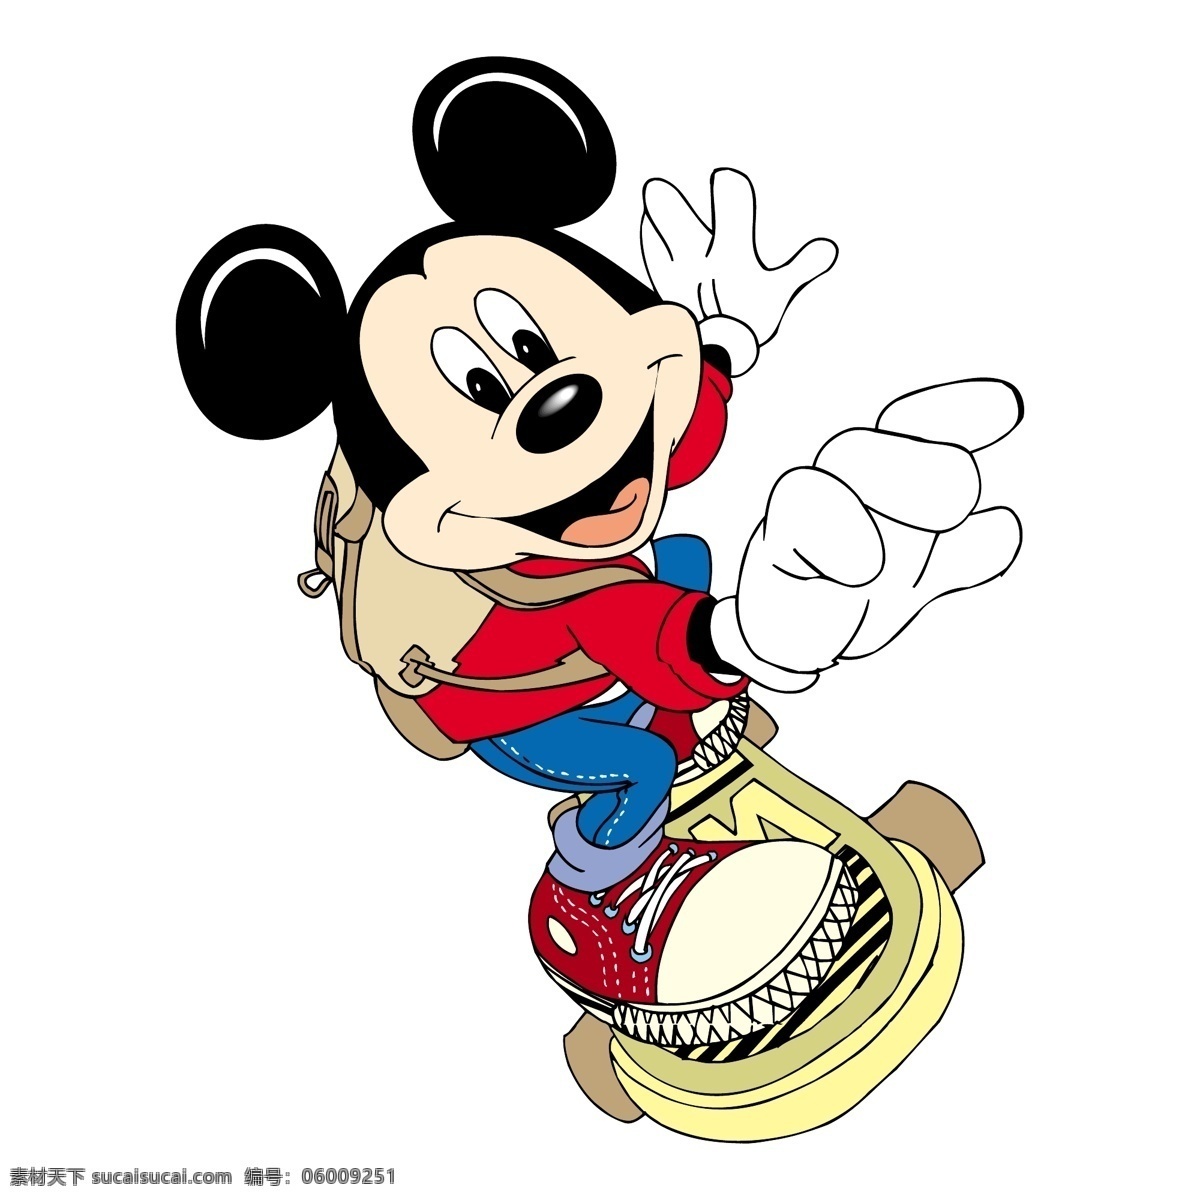 米奇老鼠37 老鼠 米奇 米奇老鼠 矢量 图形 卡通下载 迪士尼 艺术 载体 免费矢量米奇 米奇老鼠图案 文件 米奇老鼠米妮 建筑家居